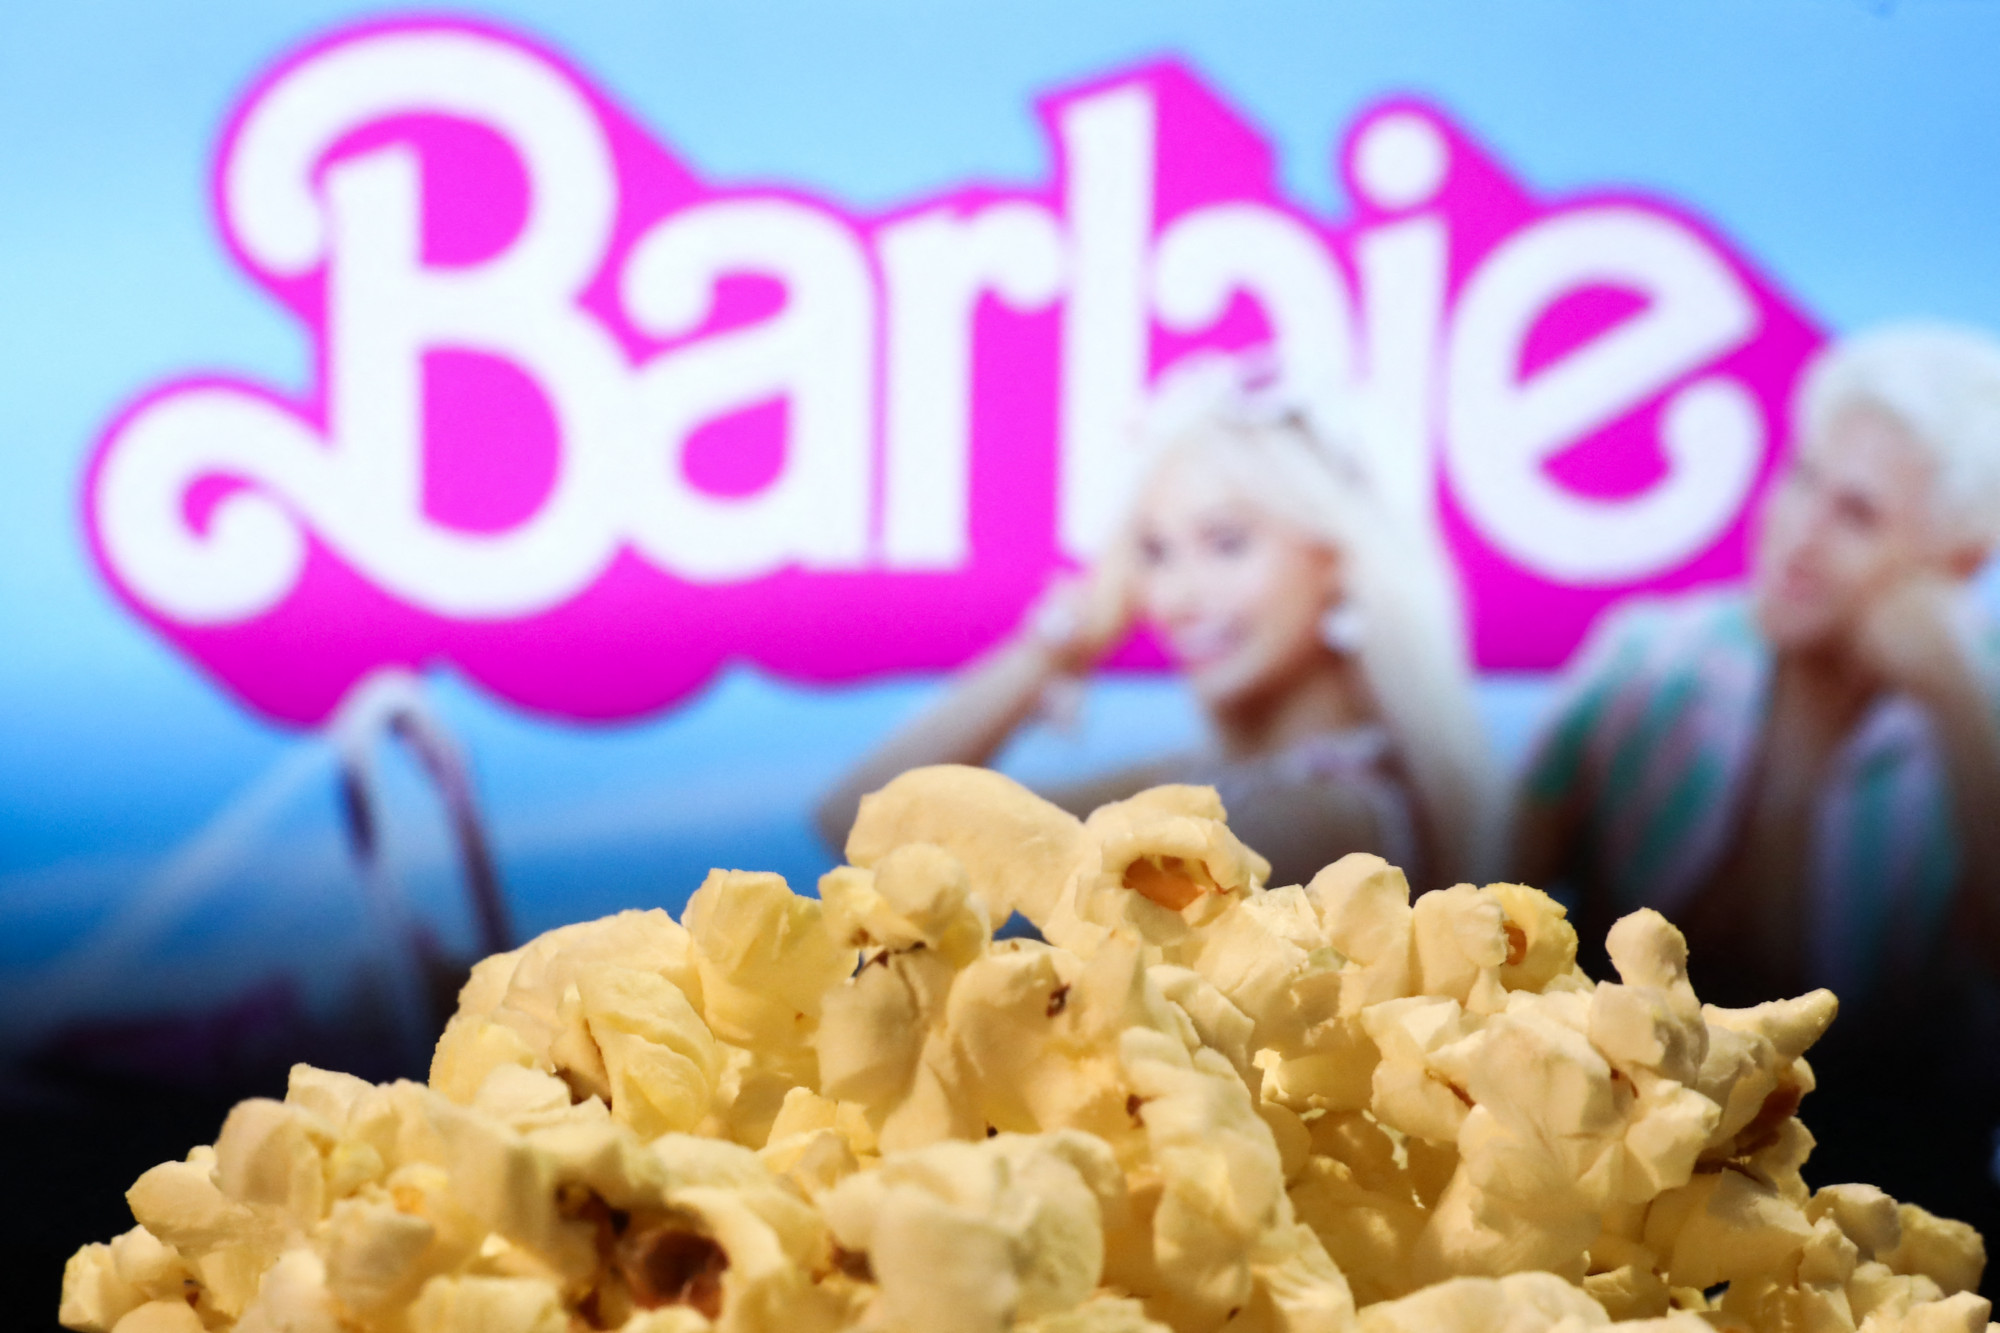 Kuvaitban betiltják a Barbie-t, Libanon lehet a következő